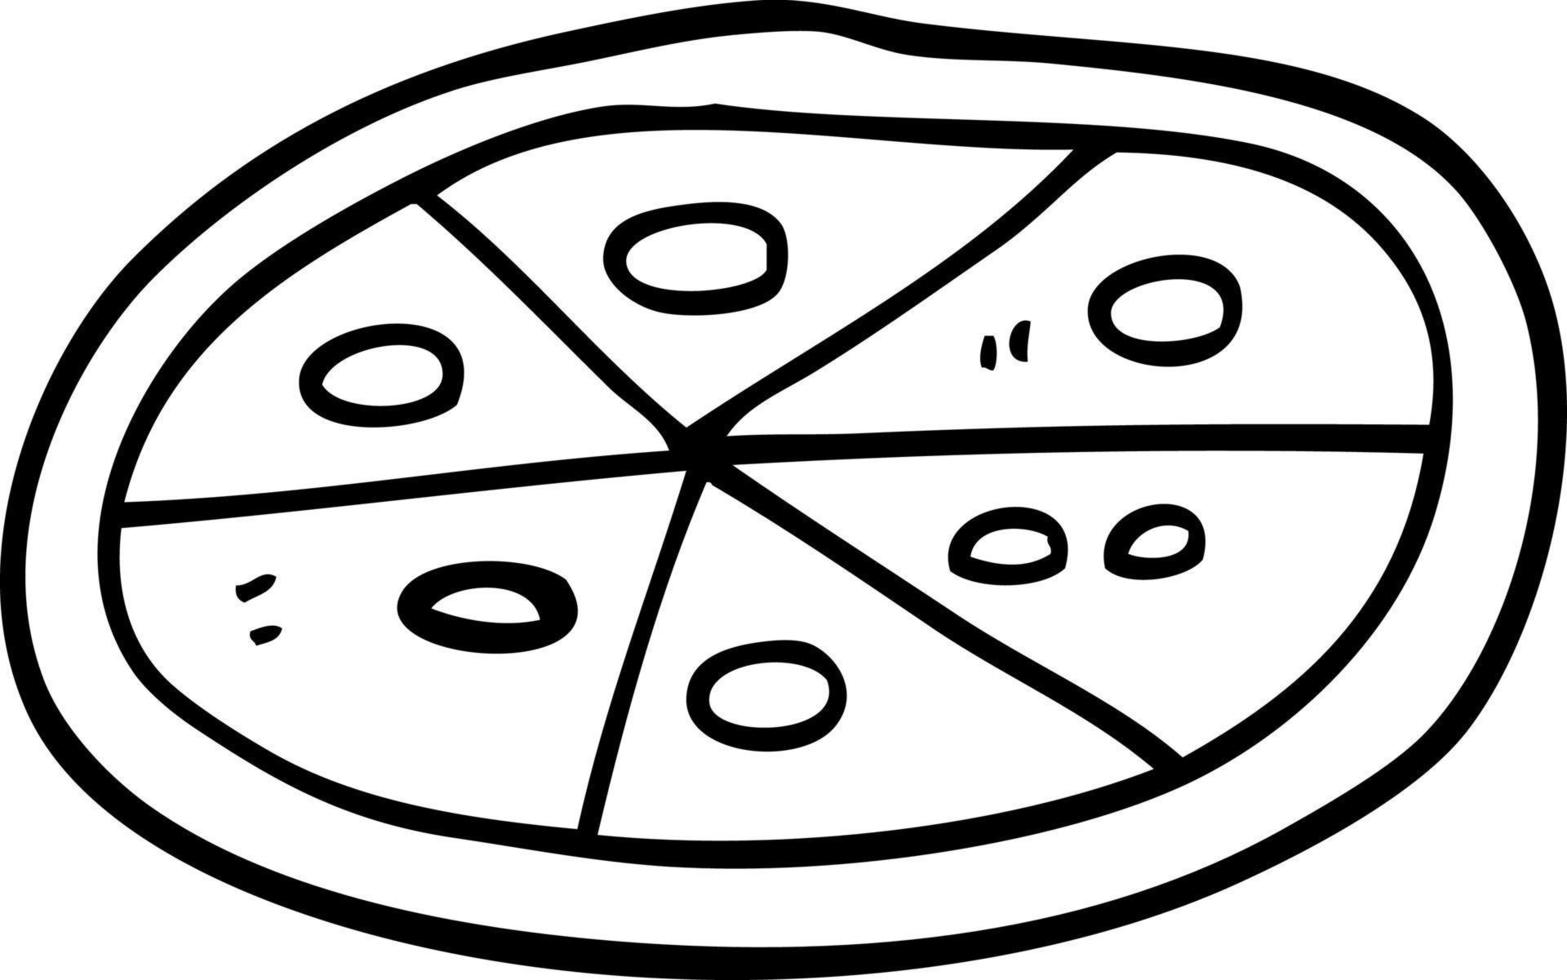 Strichzeichnung Cartoon-Pizza vektor